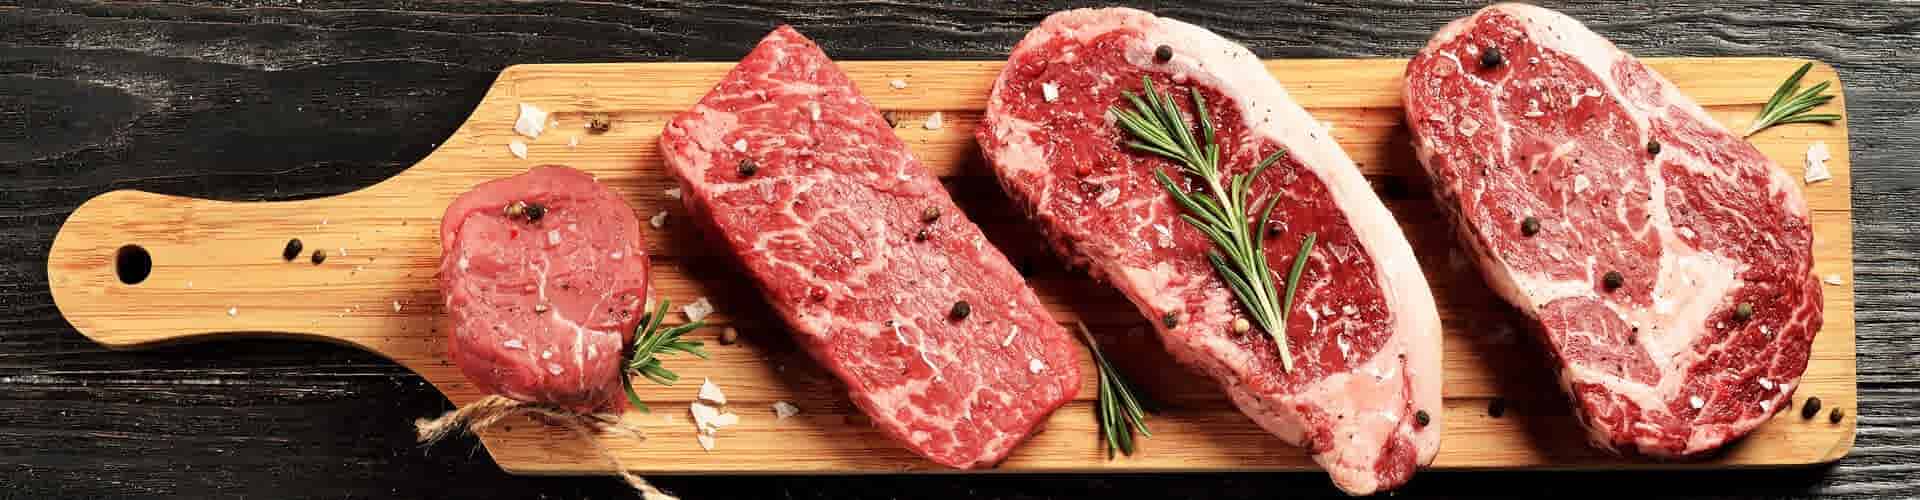 Wat verstaan we onder mager of vet vlees?